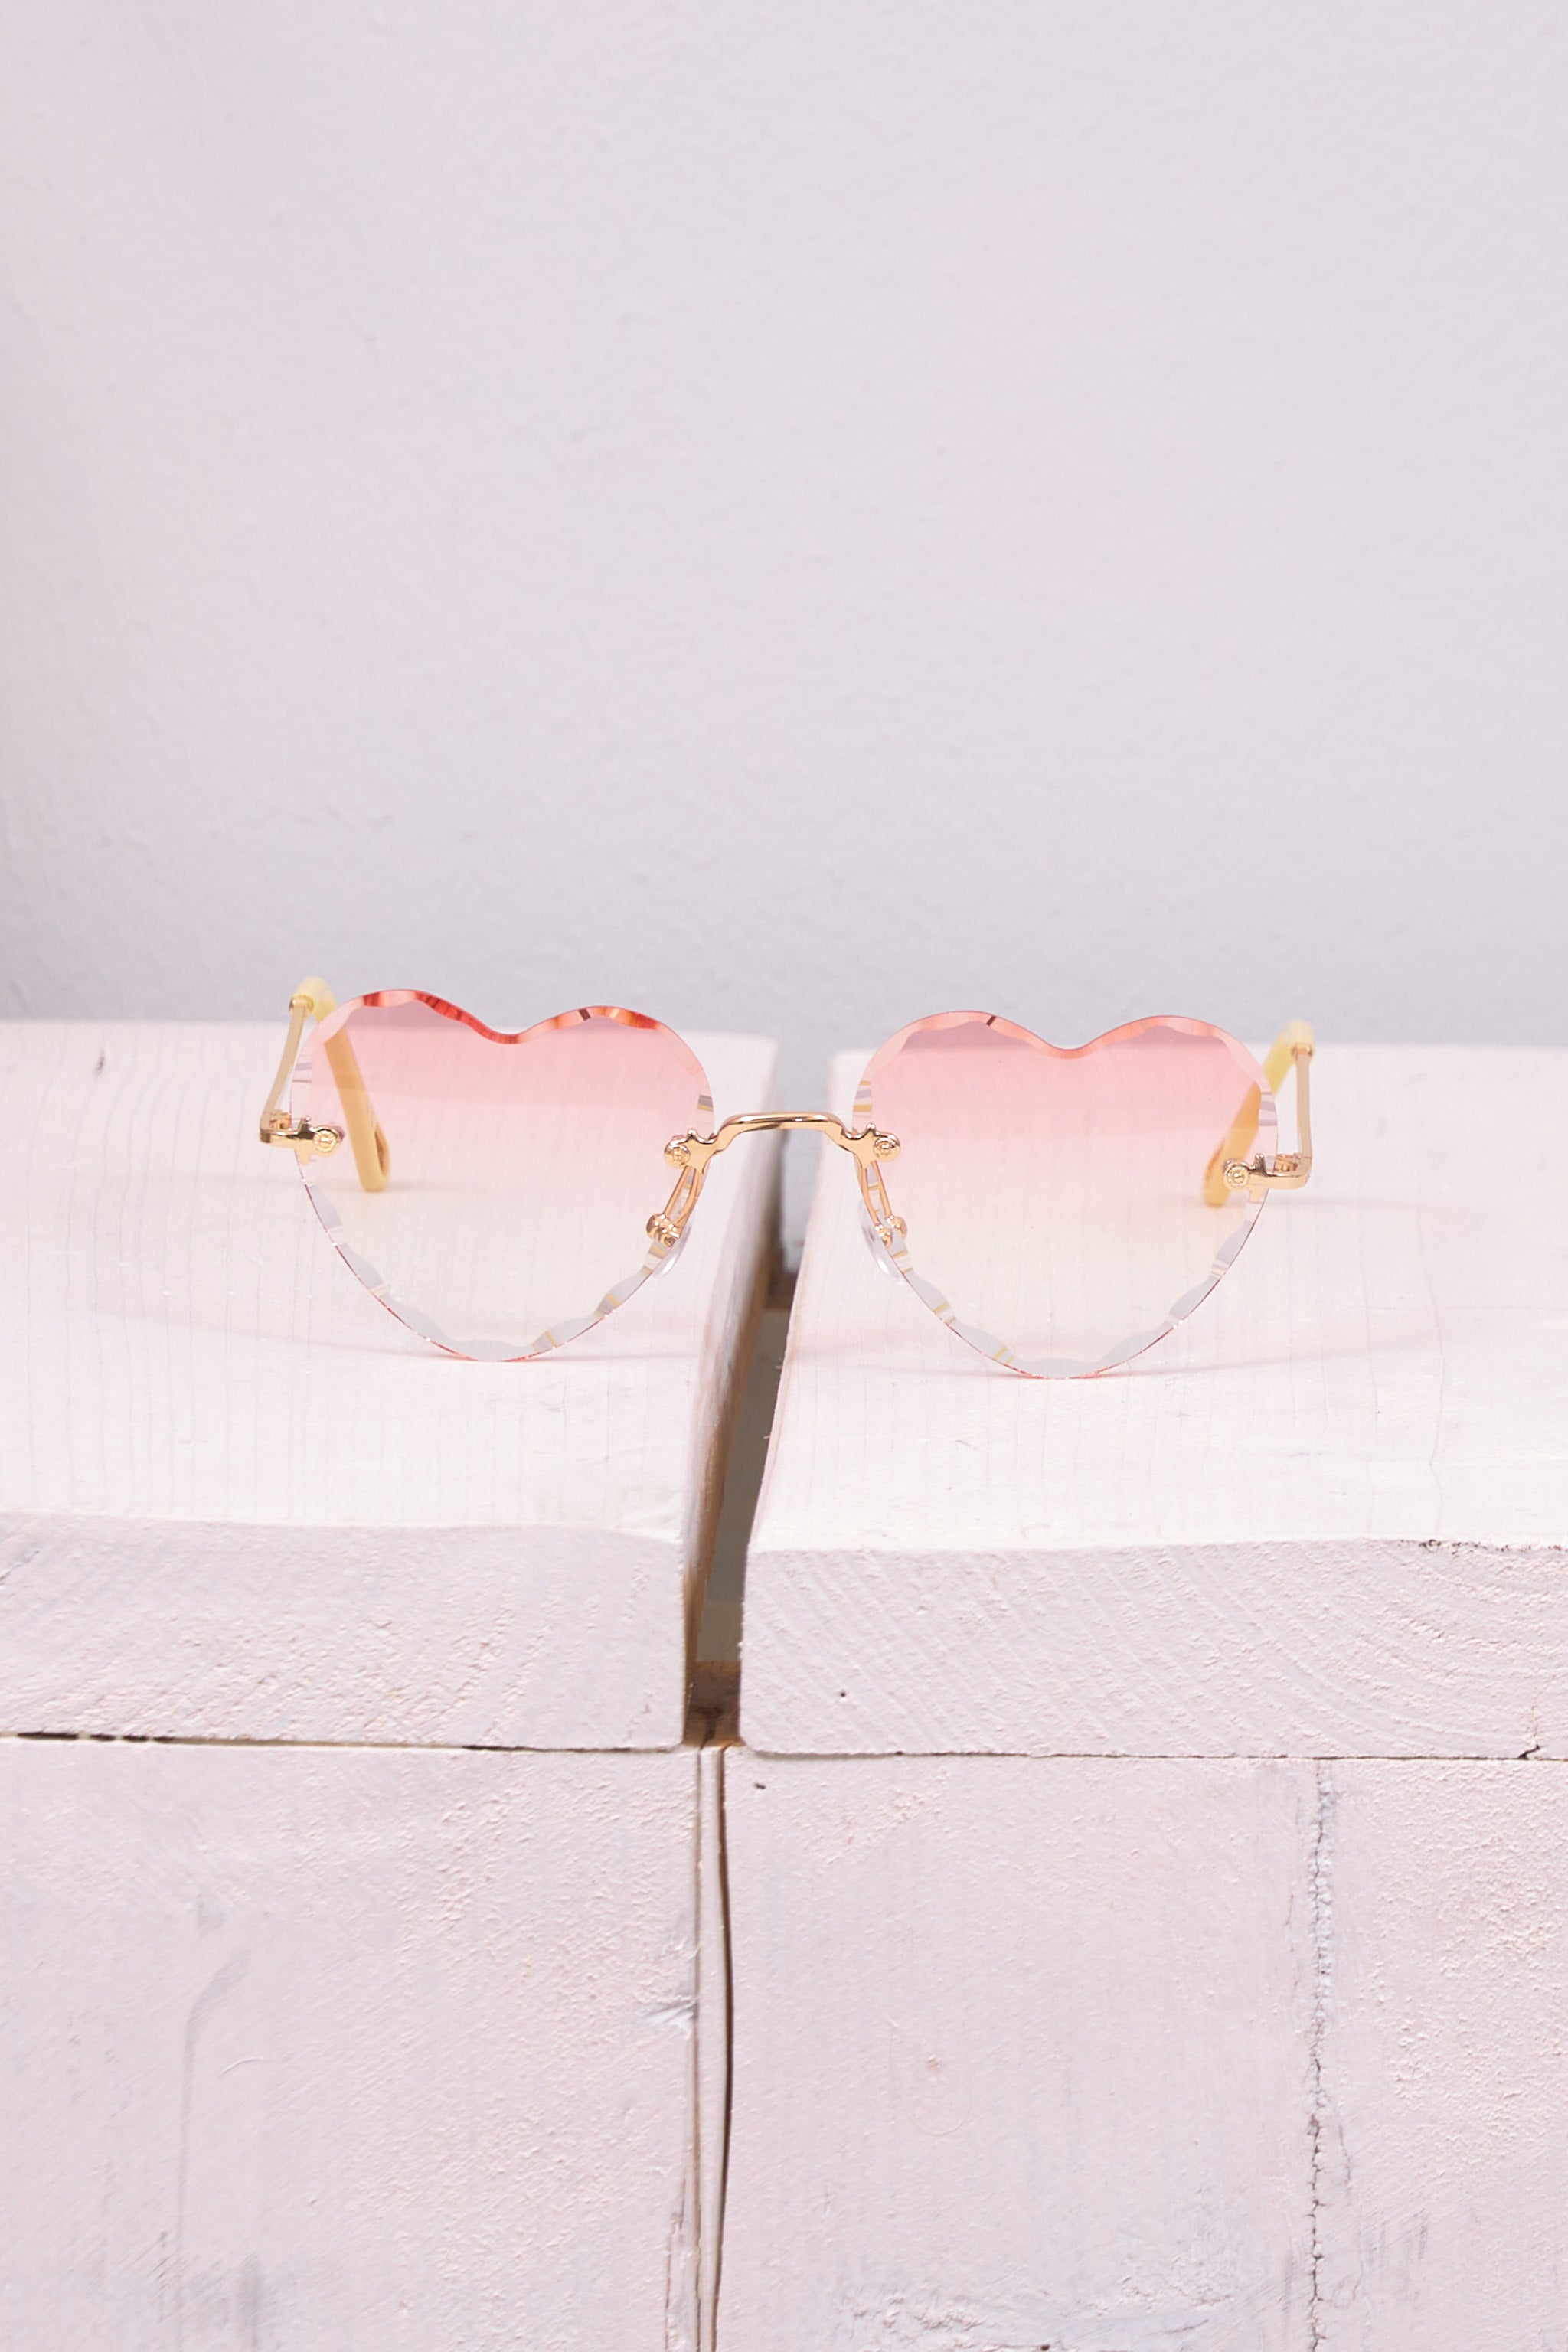 Sonnenbrille in Herzform, rosa